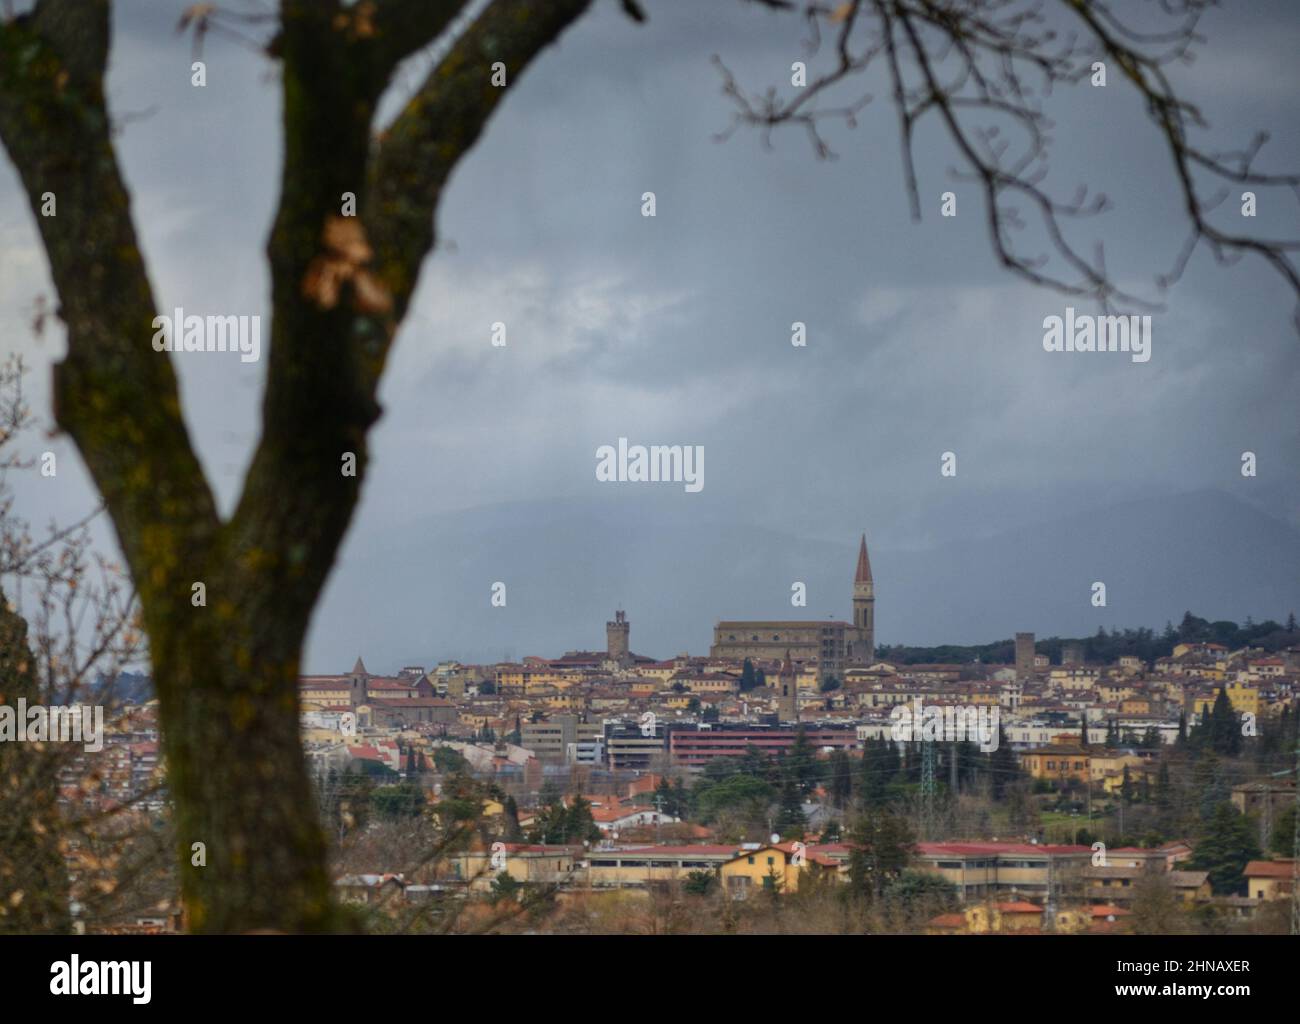 Vista panorámica de la ciudad de Arezzo vista desde una colina Foto de stock